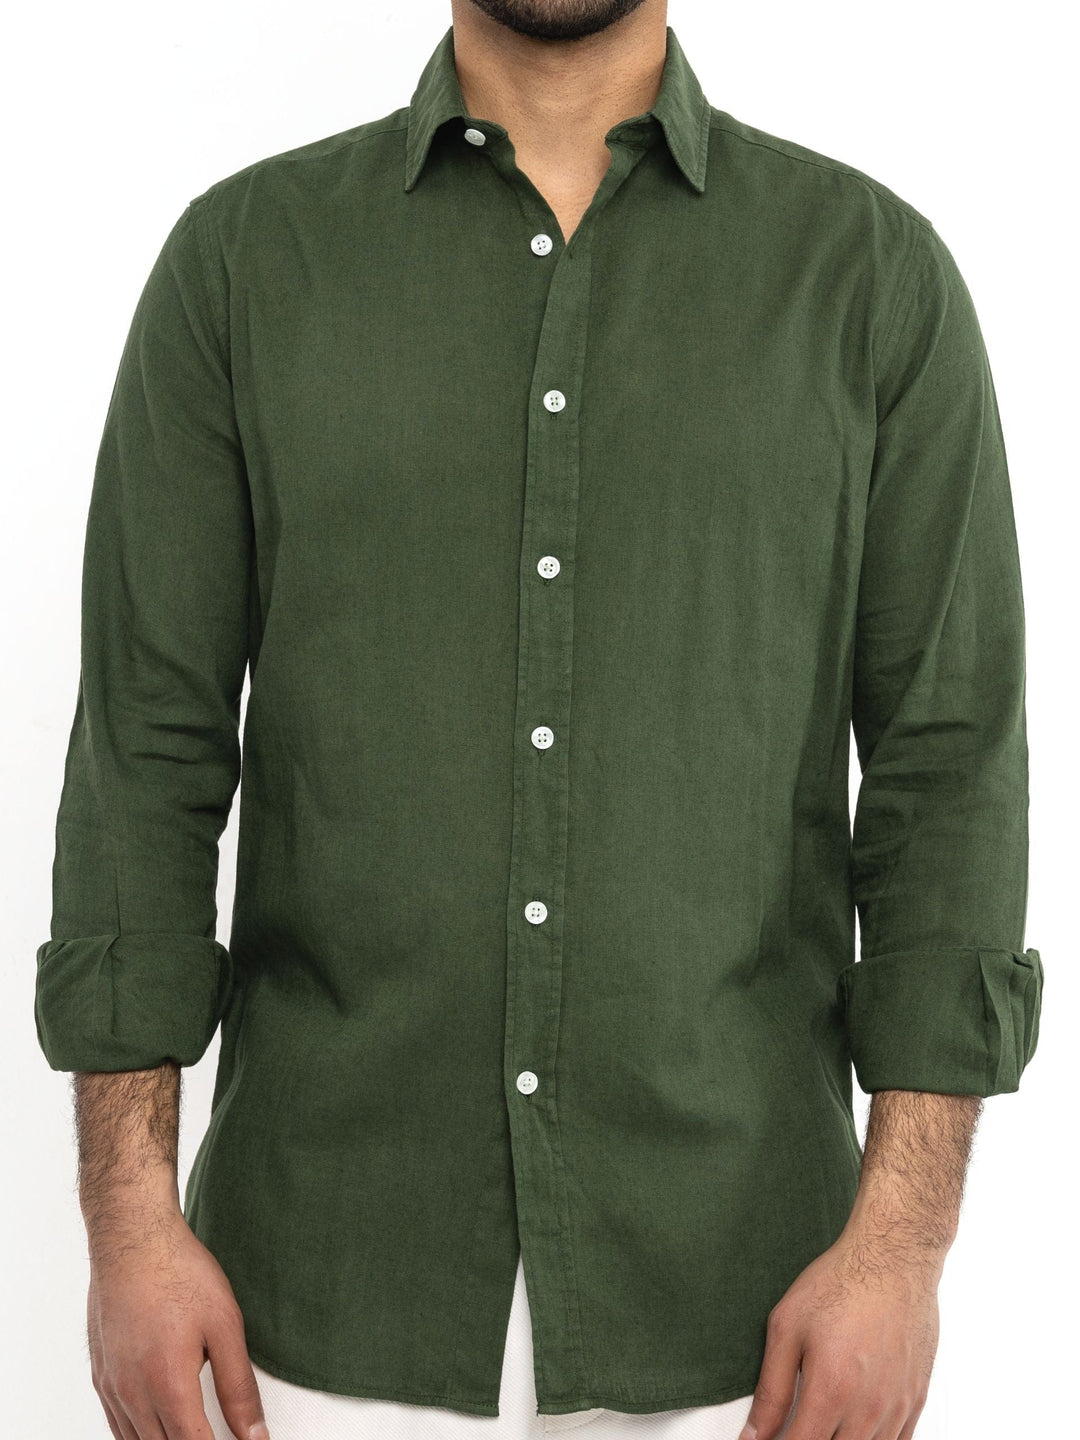 Zhivago Men Men Linen Shirt Olive Green Linen Shirt